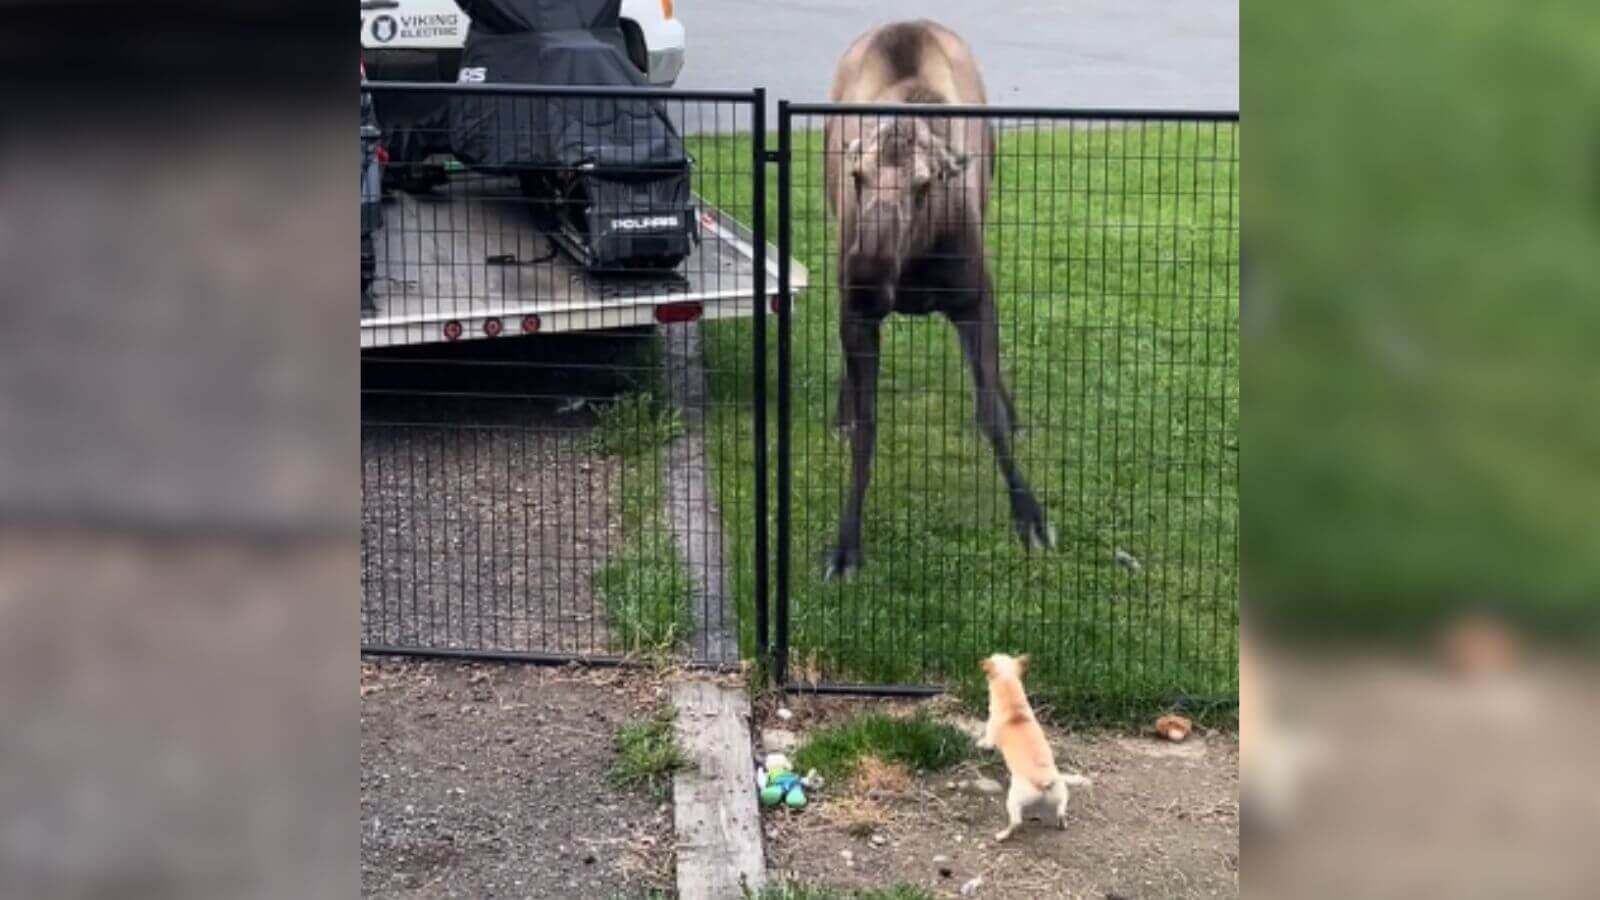 Cachorro chihuahua do lado de dentro de cerca latindo para um grande alce do lado de fora.